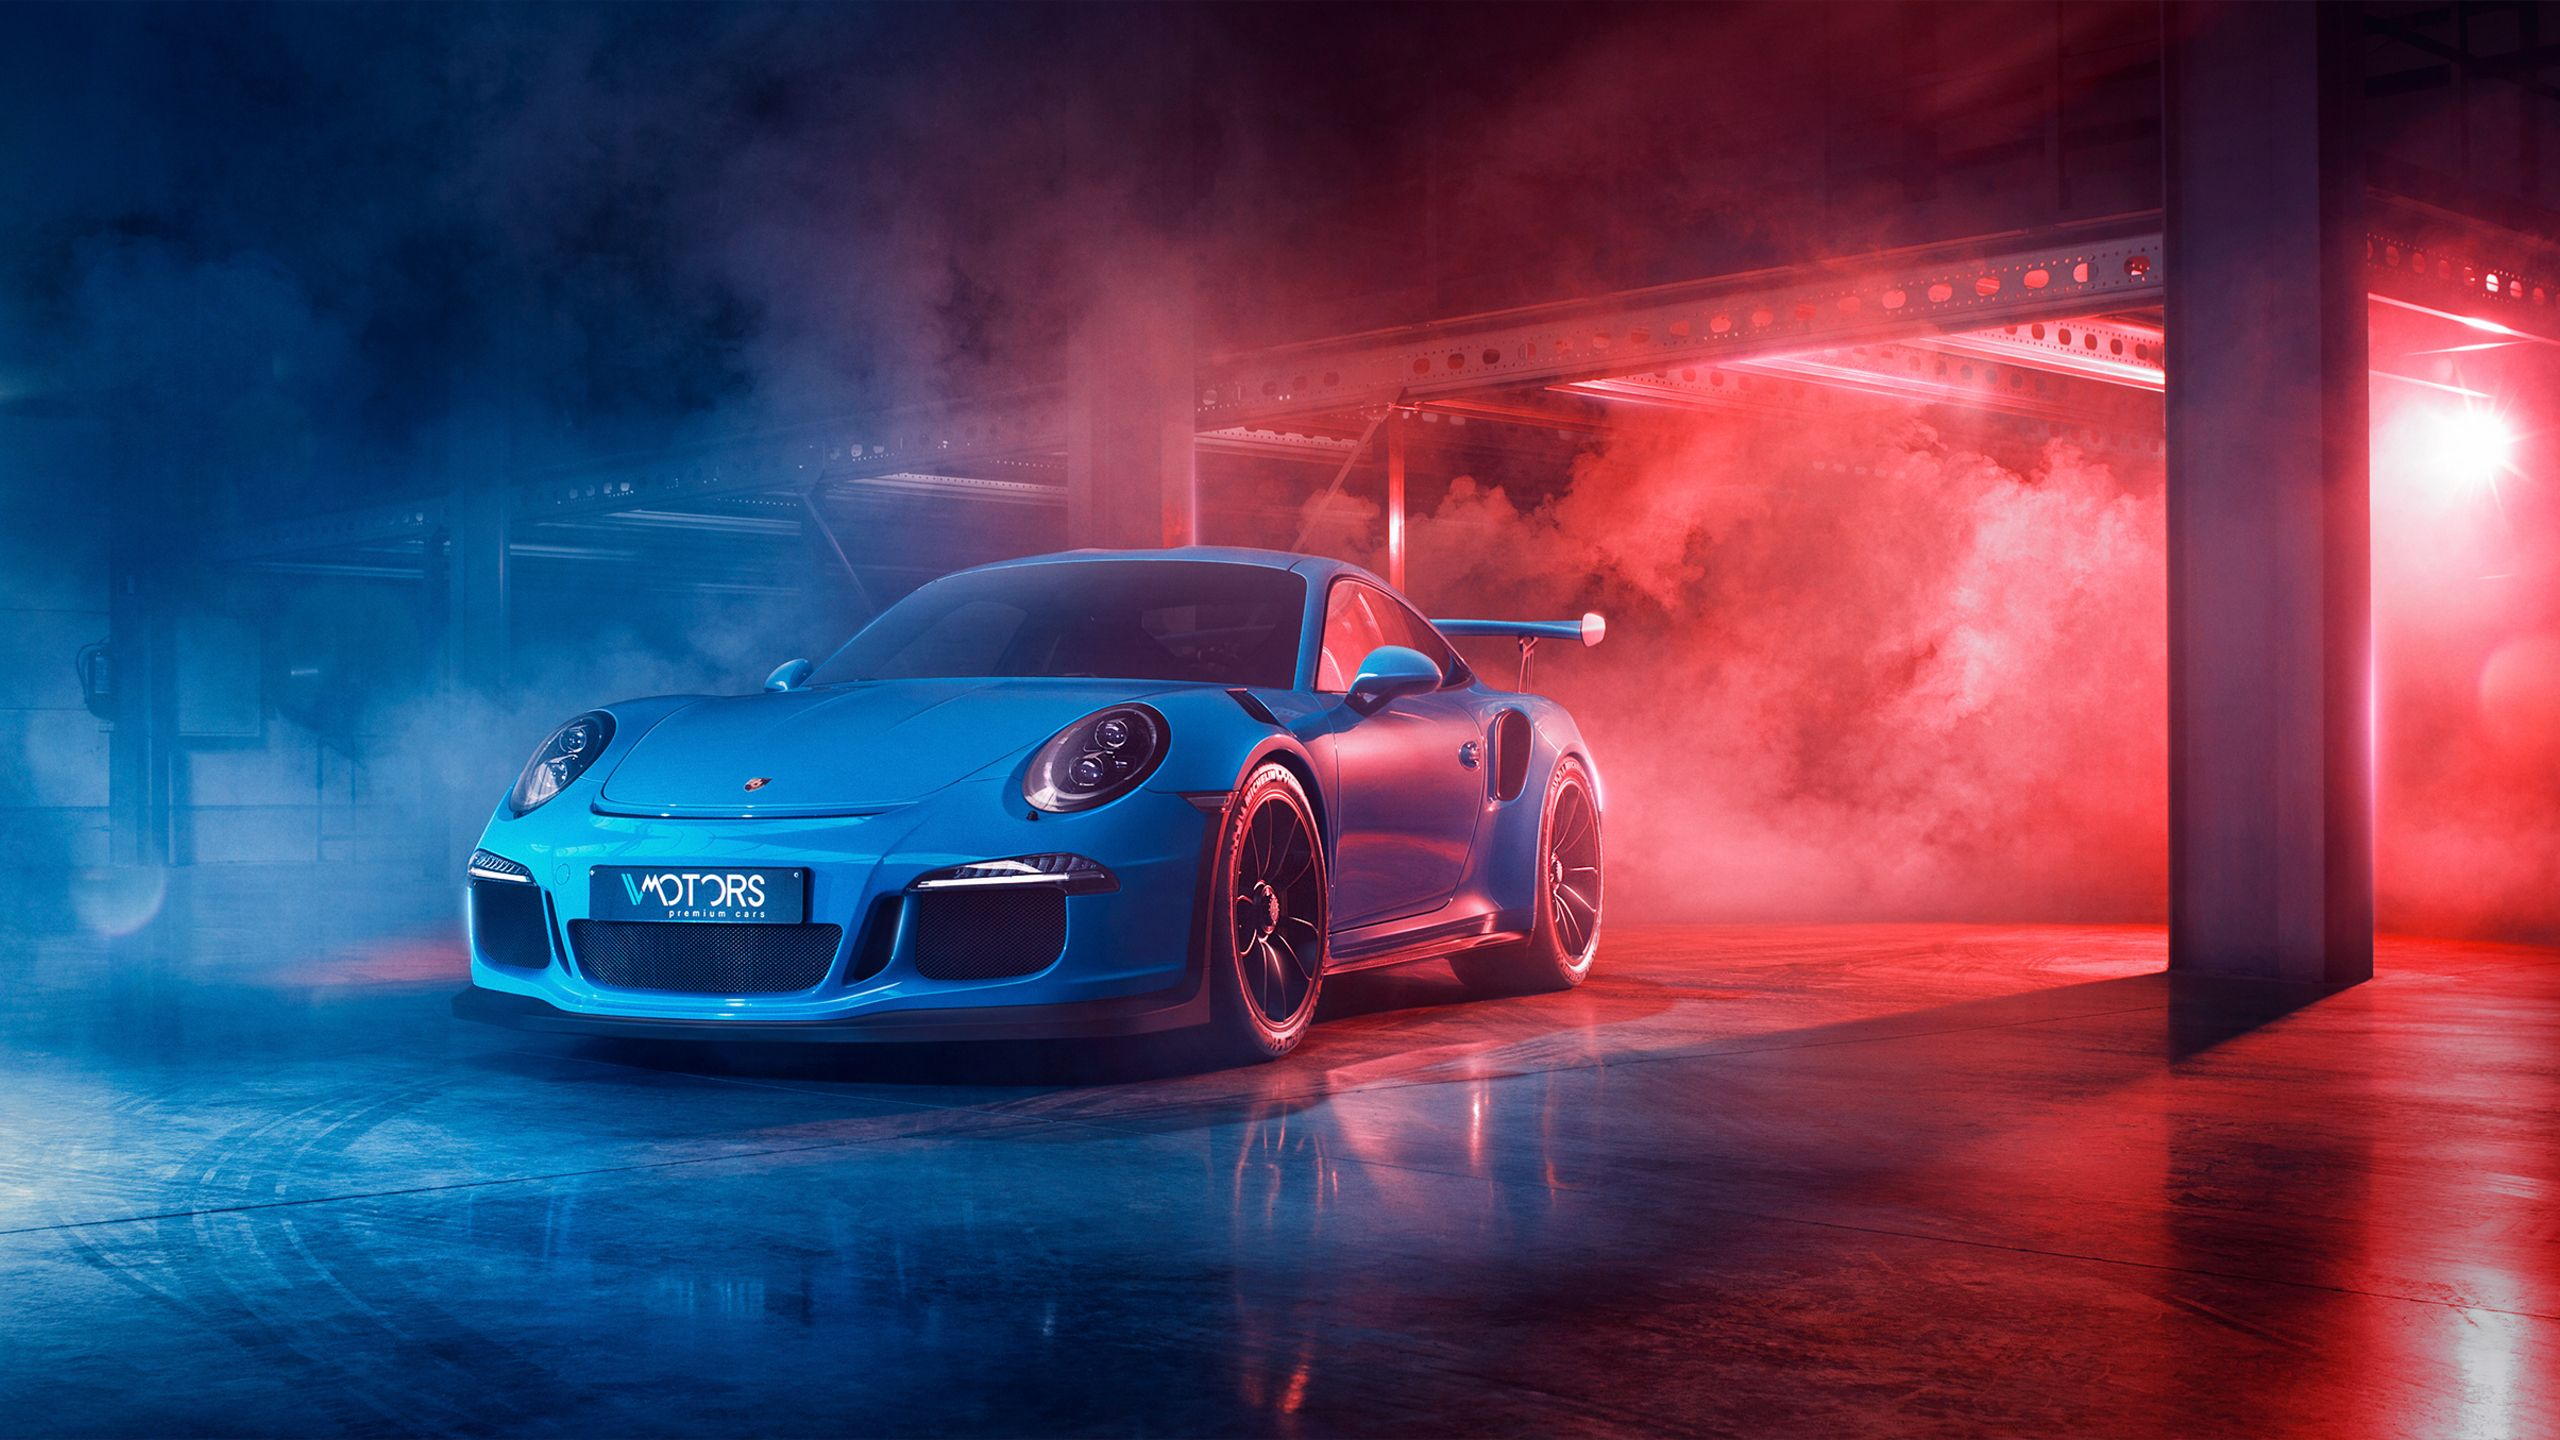 2560x1440 Porsche Wallpapers